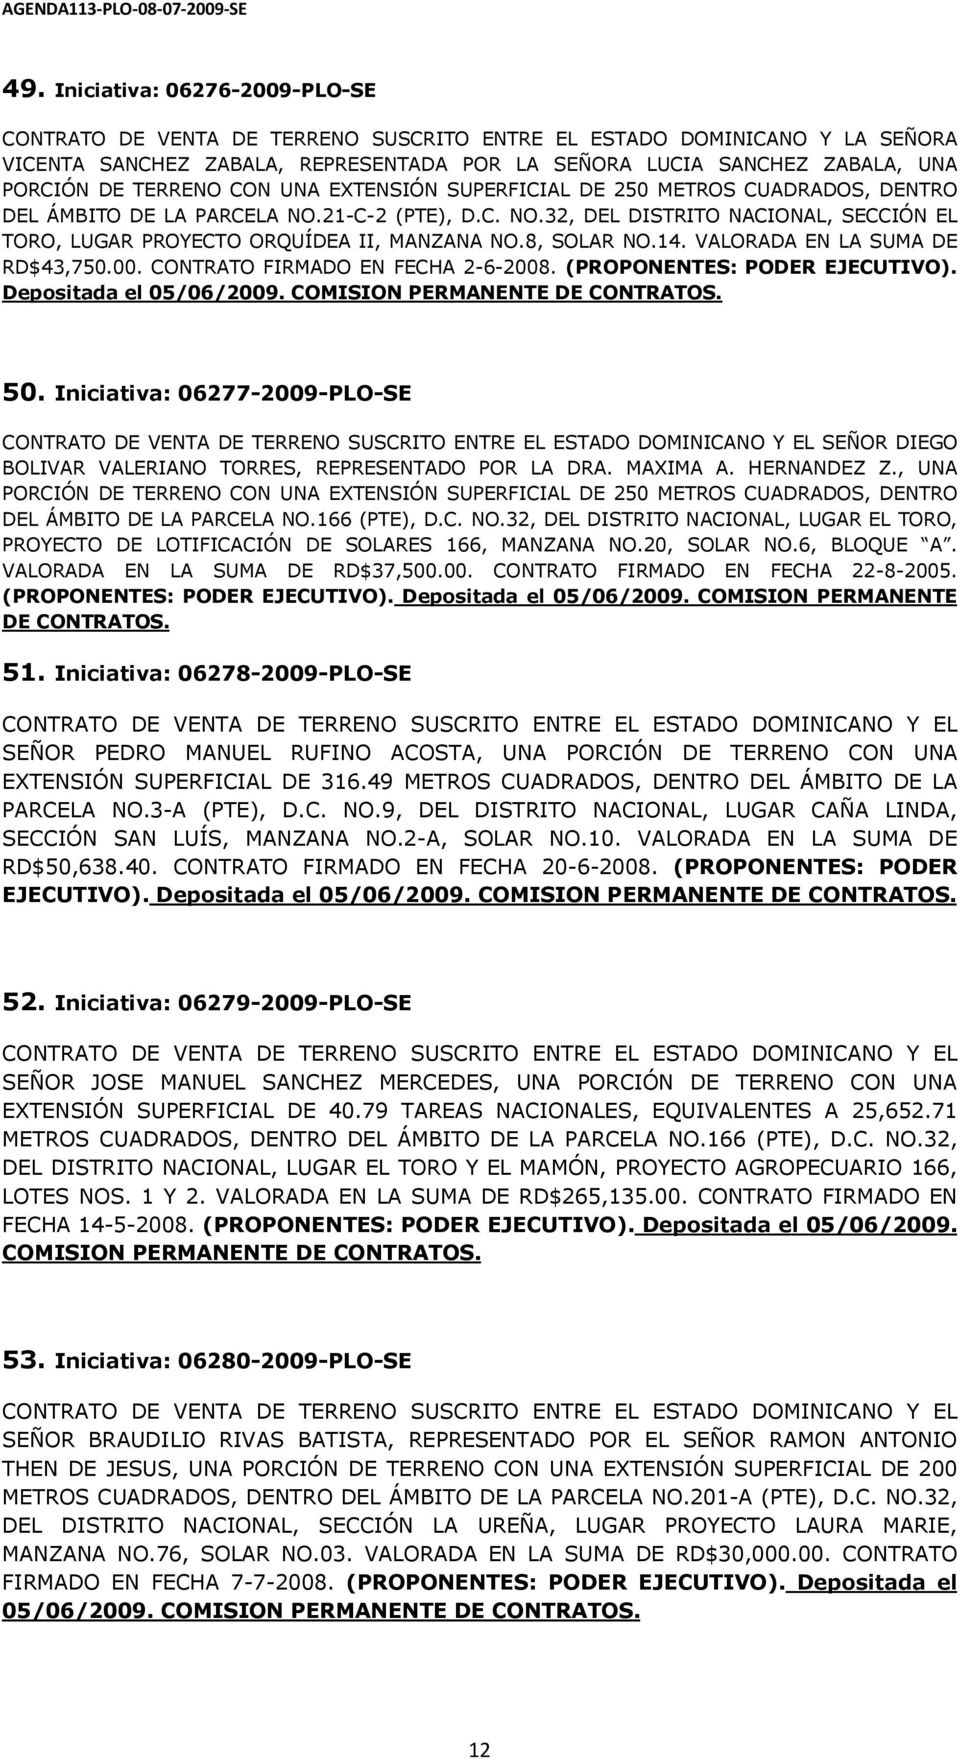 ÁMBITO DE LA PARCELA NO.21-C-2 (PTE), D.C. NO.32, DEL DISTRITO NACIONAL, SECCIÓN EL TORO, LUGAR PROYECTO ORQUÍDEA II, MANZANA NO.8, SOLAR NO.14. VALORADA EN LA SUMA DE RD$43,750.00.